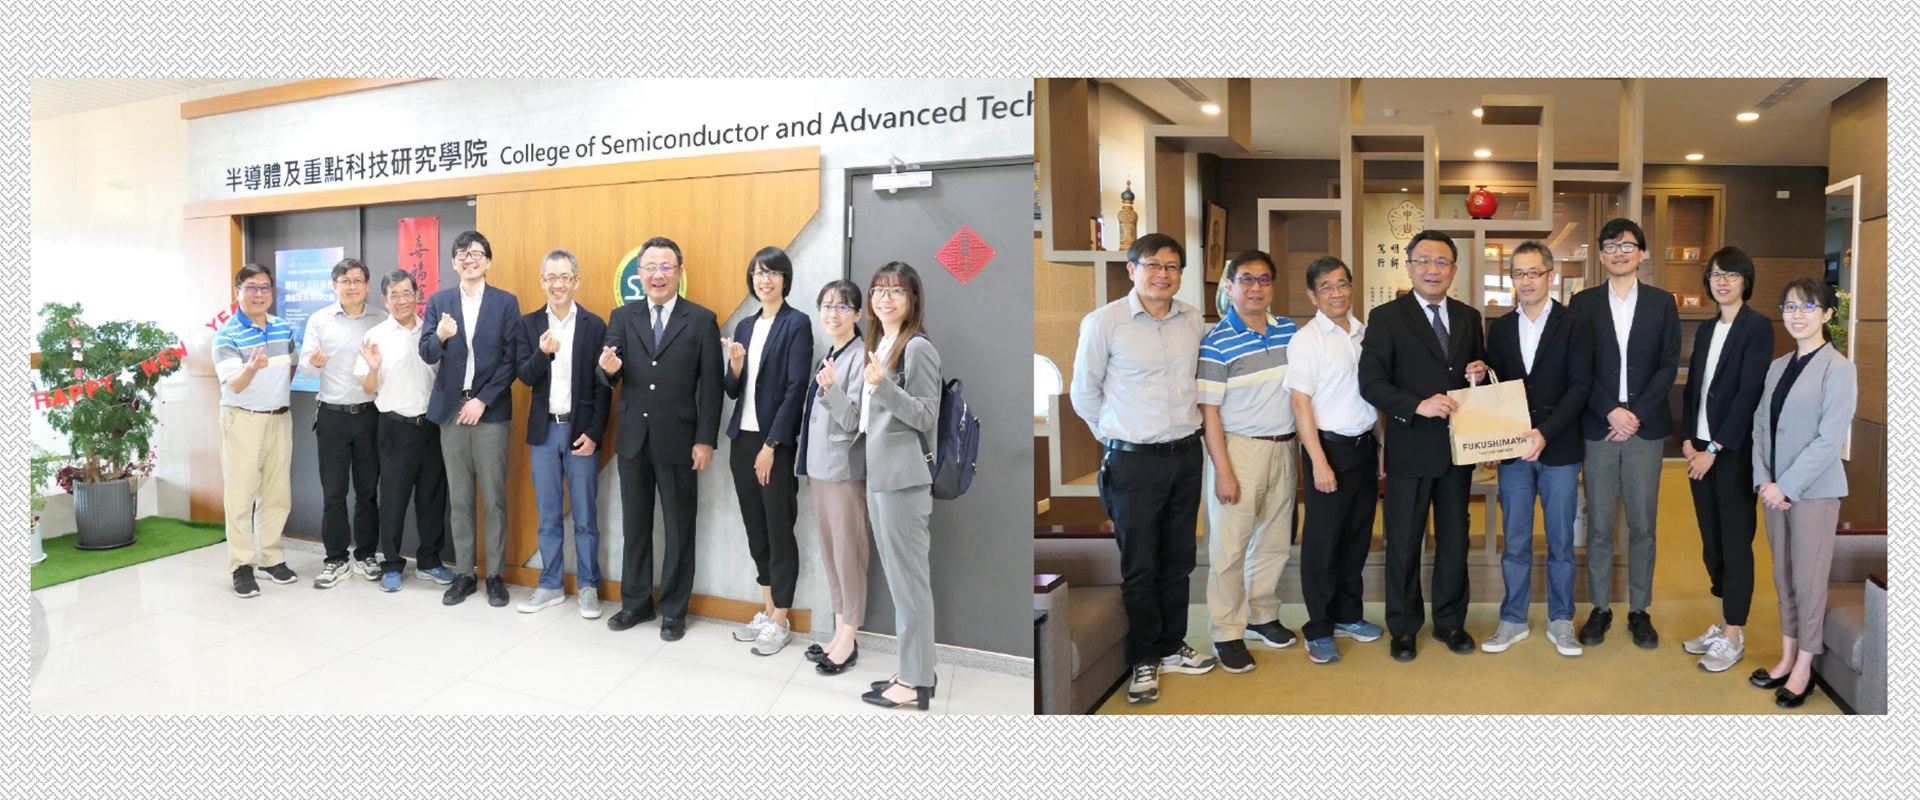 歡迎日本台灣交流協會及日本貿易振興機構(JETTO)蒞校訪問半導體學院